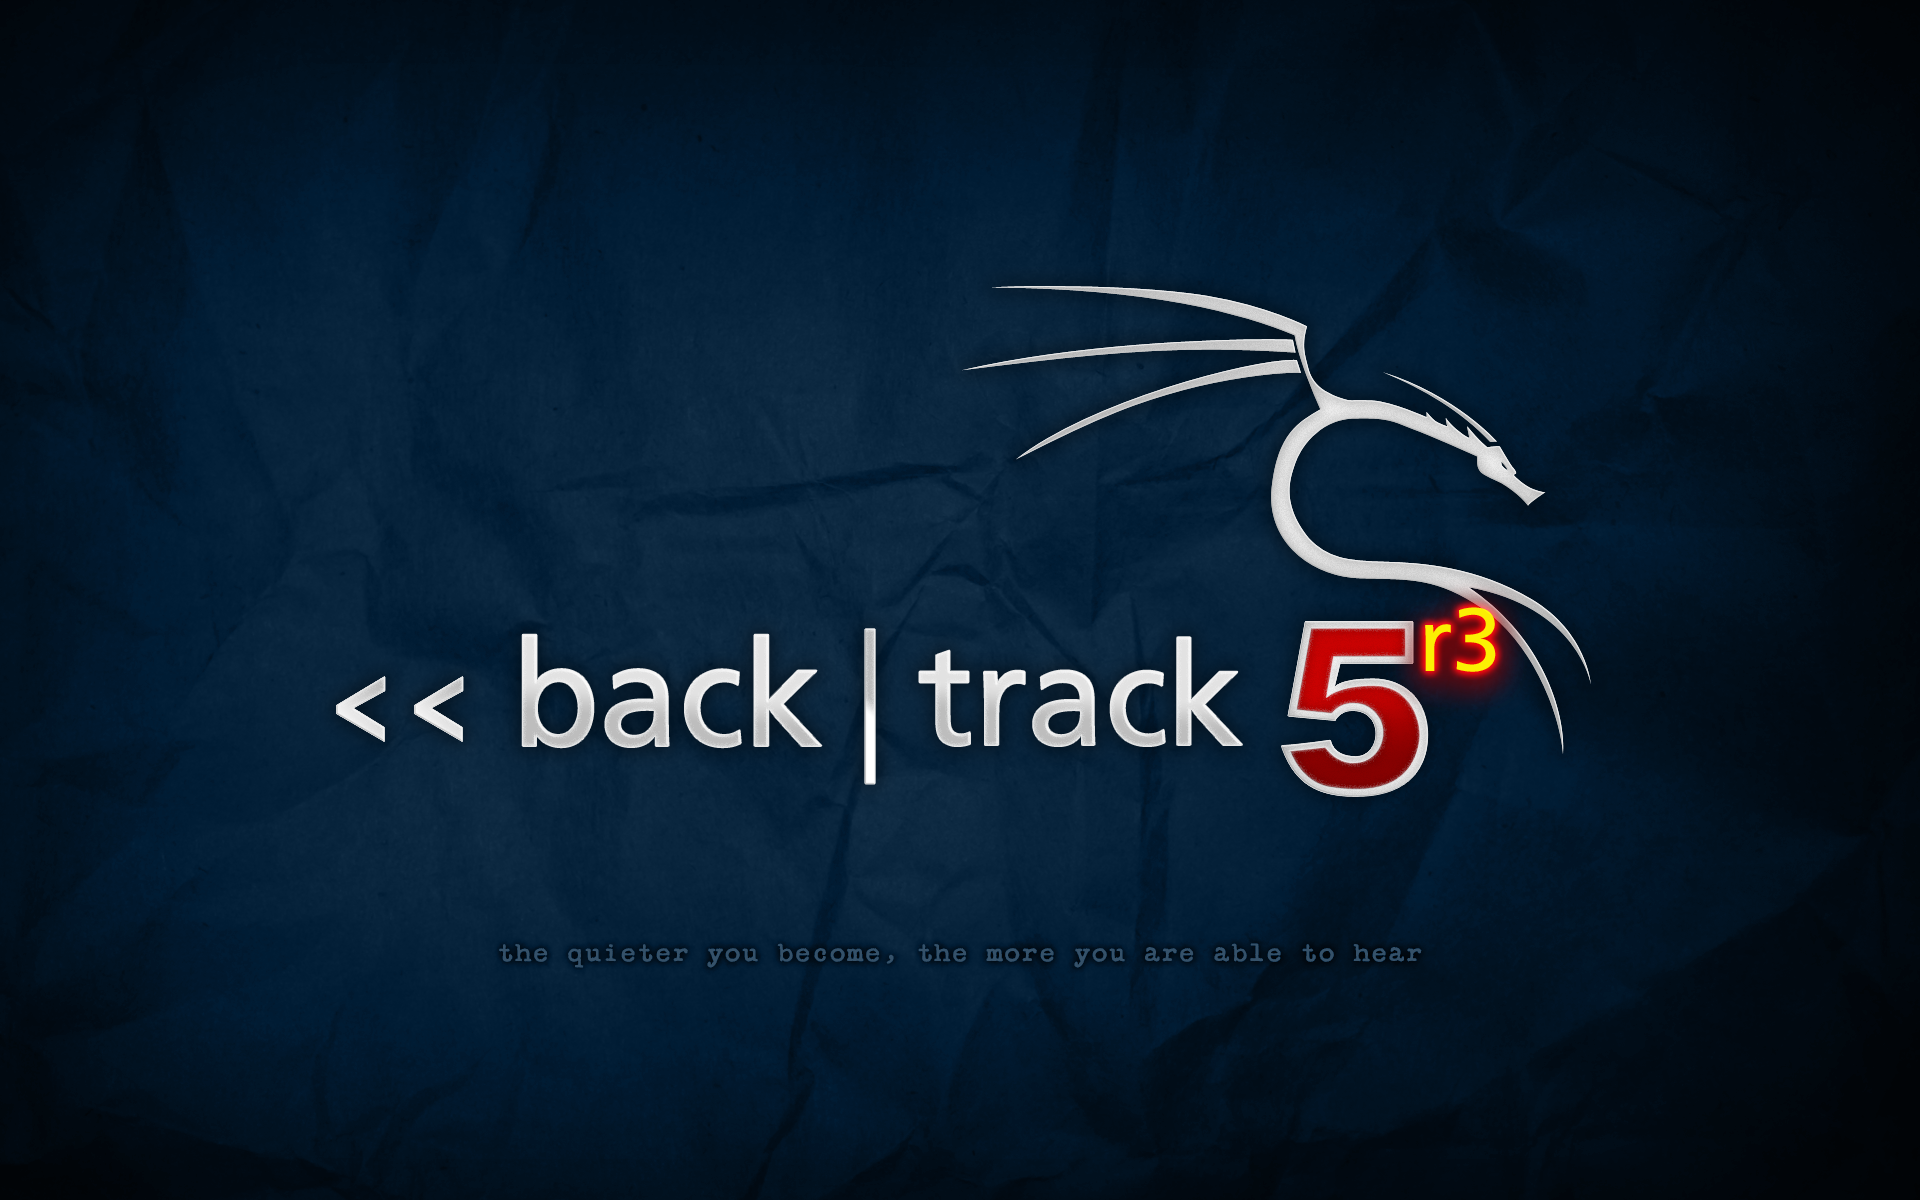 backtrack-5r3-blue.png